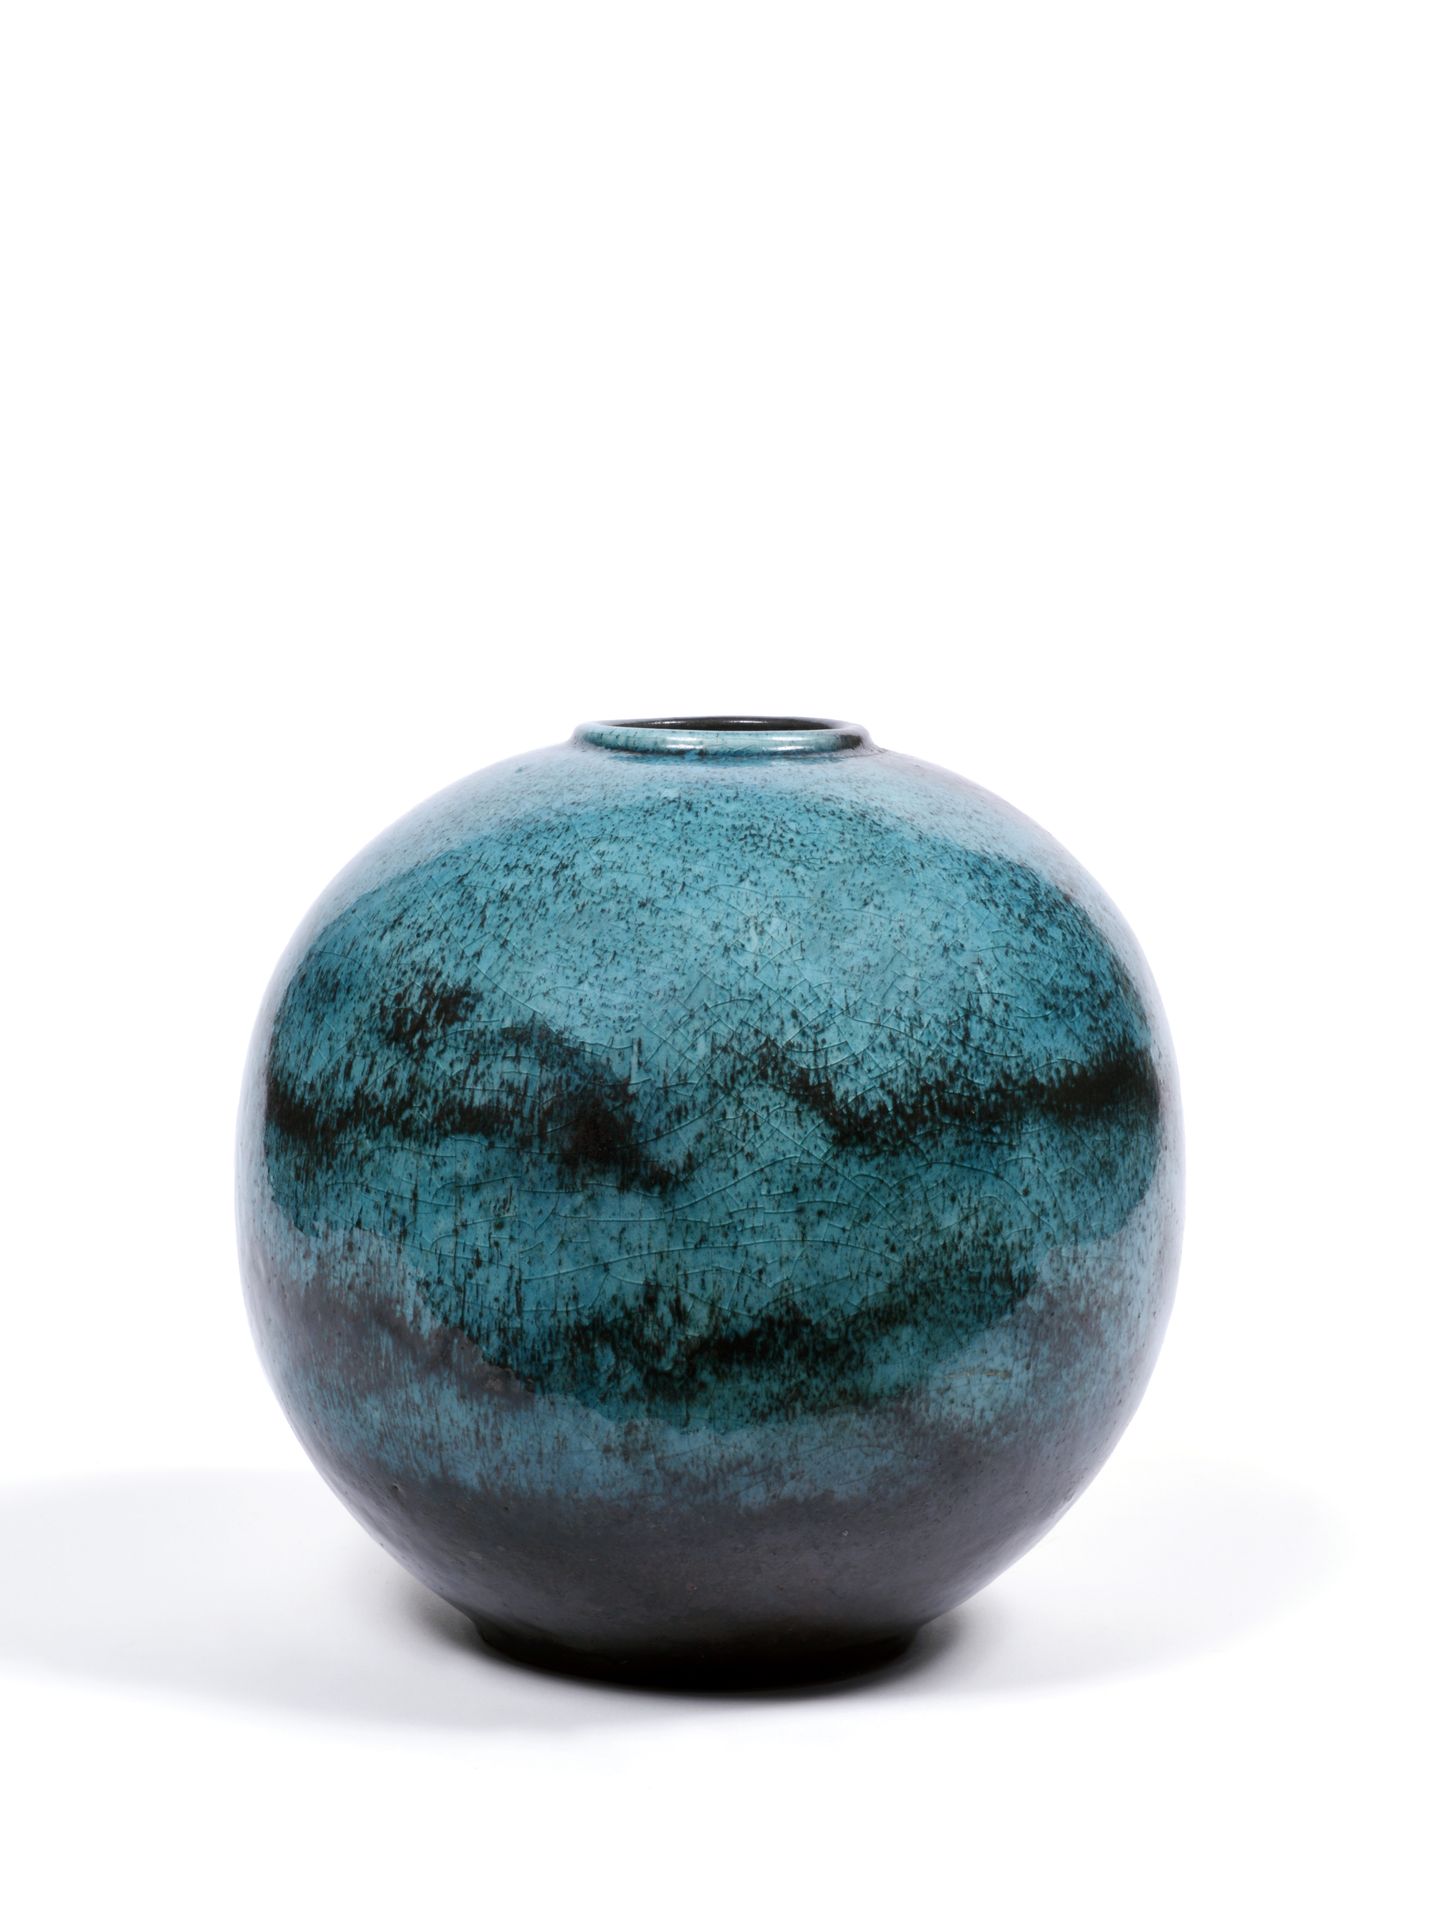 DALPAYRAT Vase boule
en céramique bleue
H : 23 cm